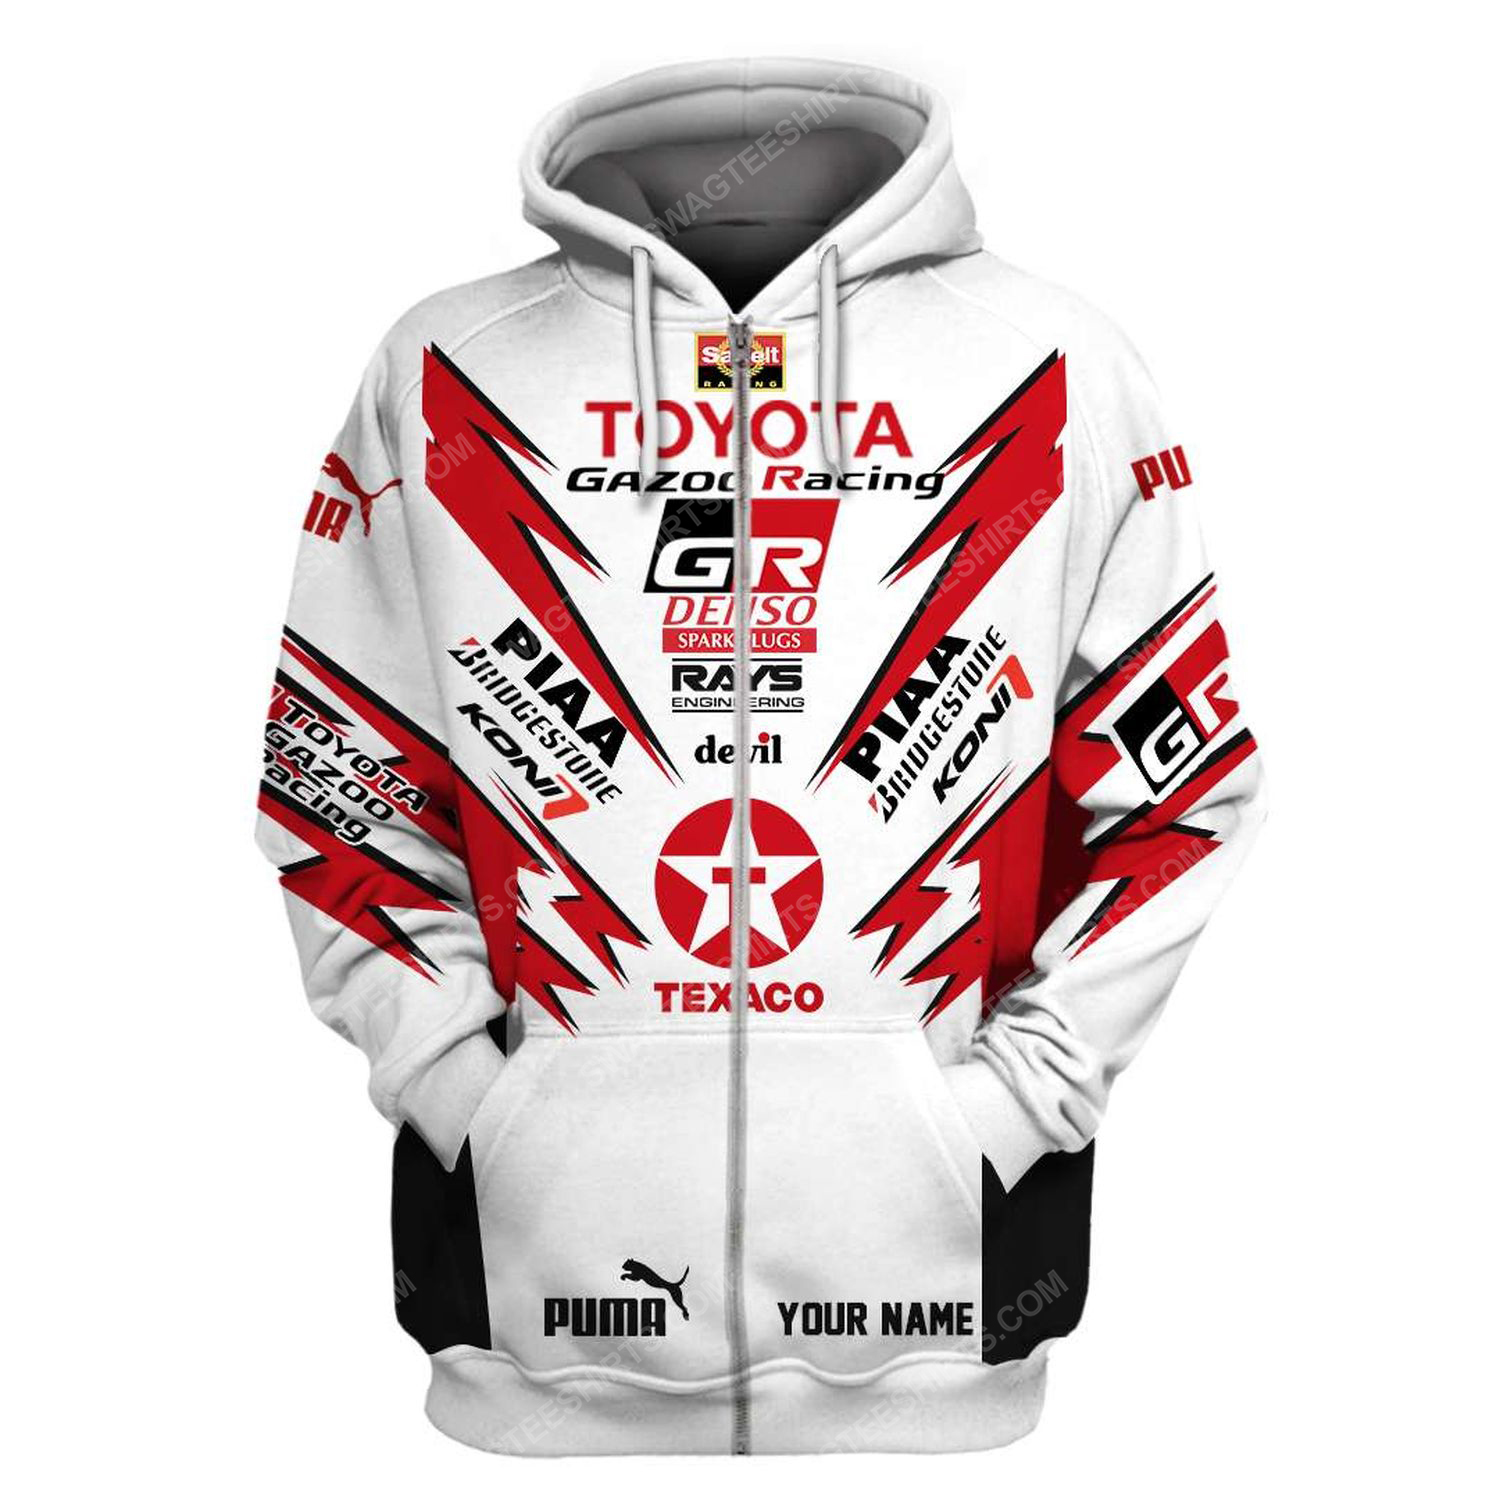 Custom toyota gazoo racing team motorsport full printing zip hoodie